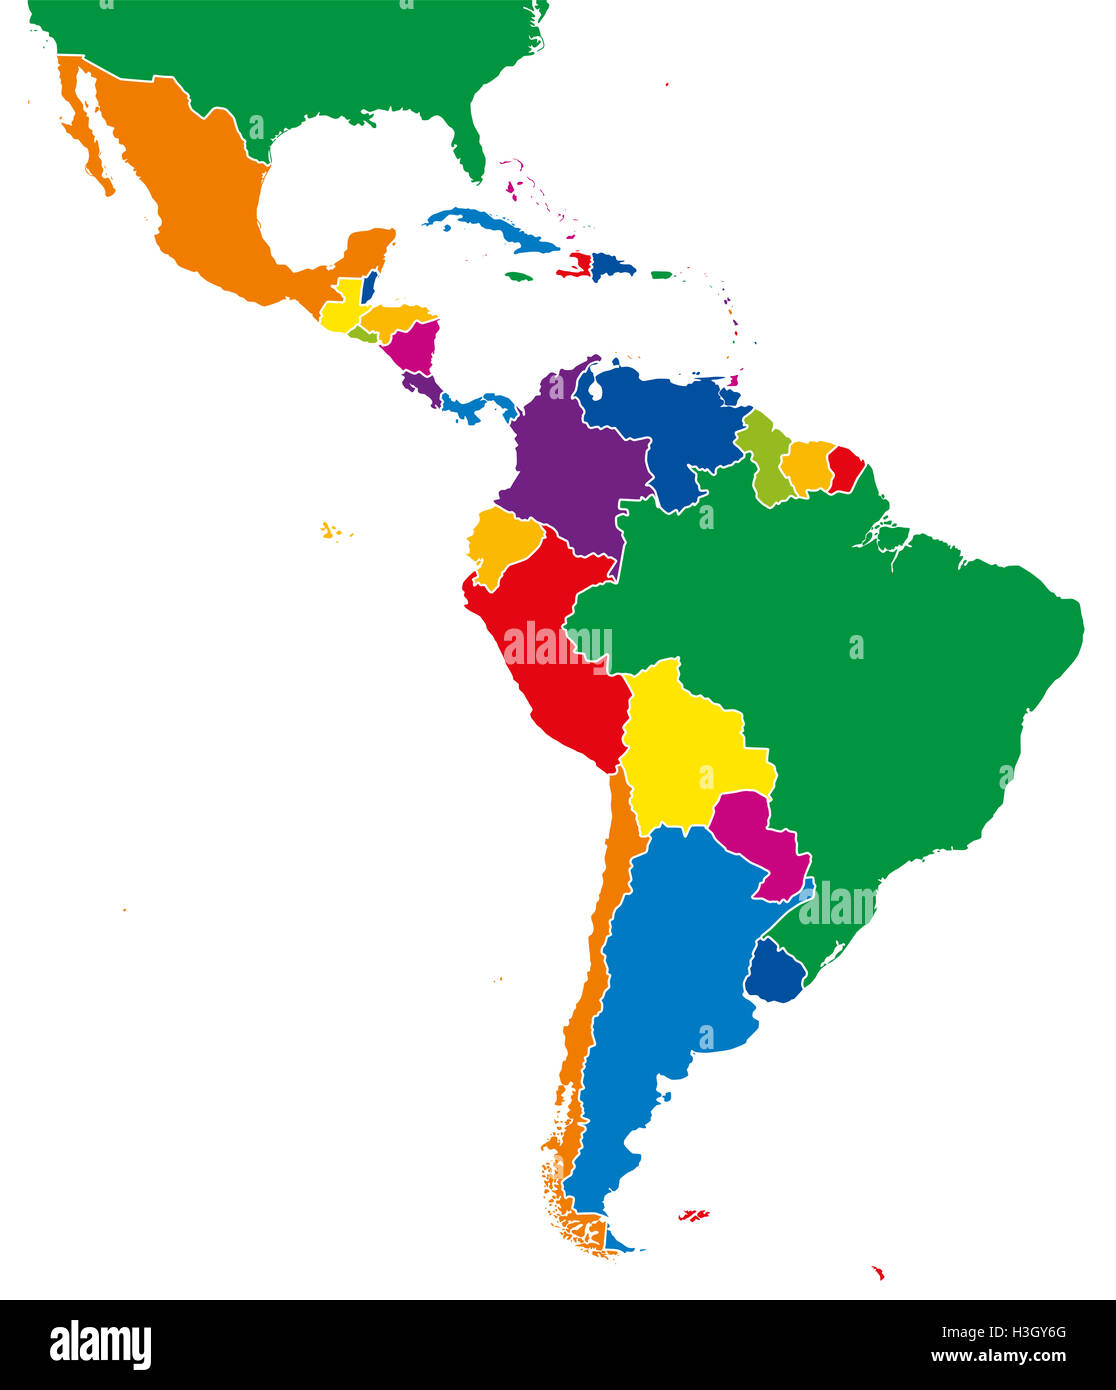 L'Amérique latine seule carte. Tous les pays en différentes couleurs intenses et complète avec les frontières nationales. Banque D'Images